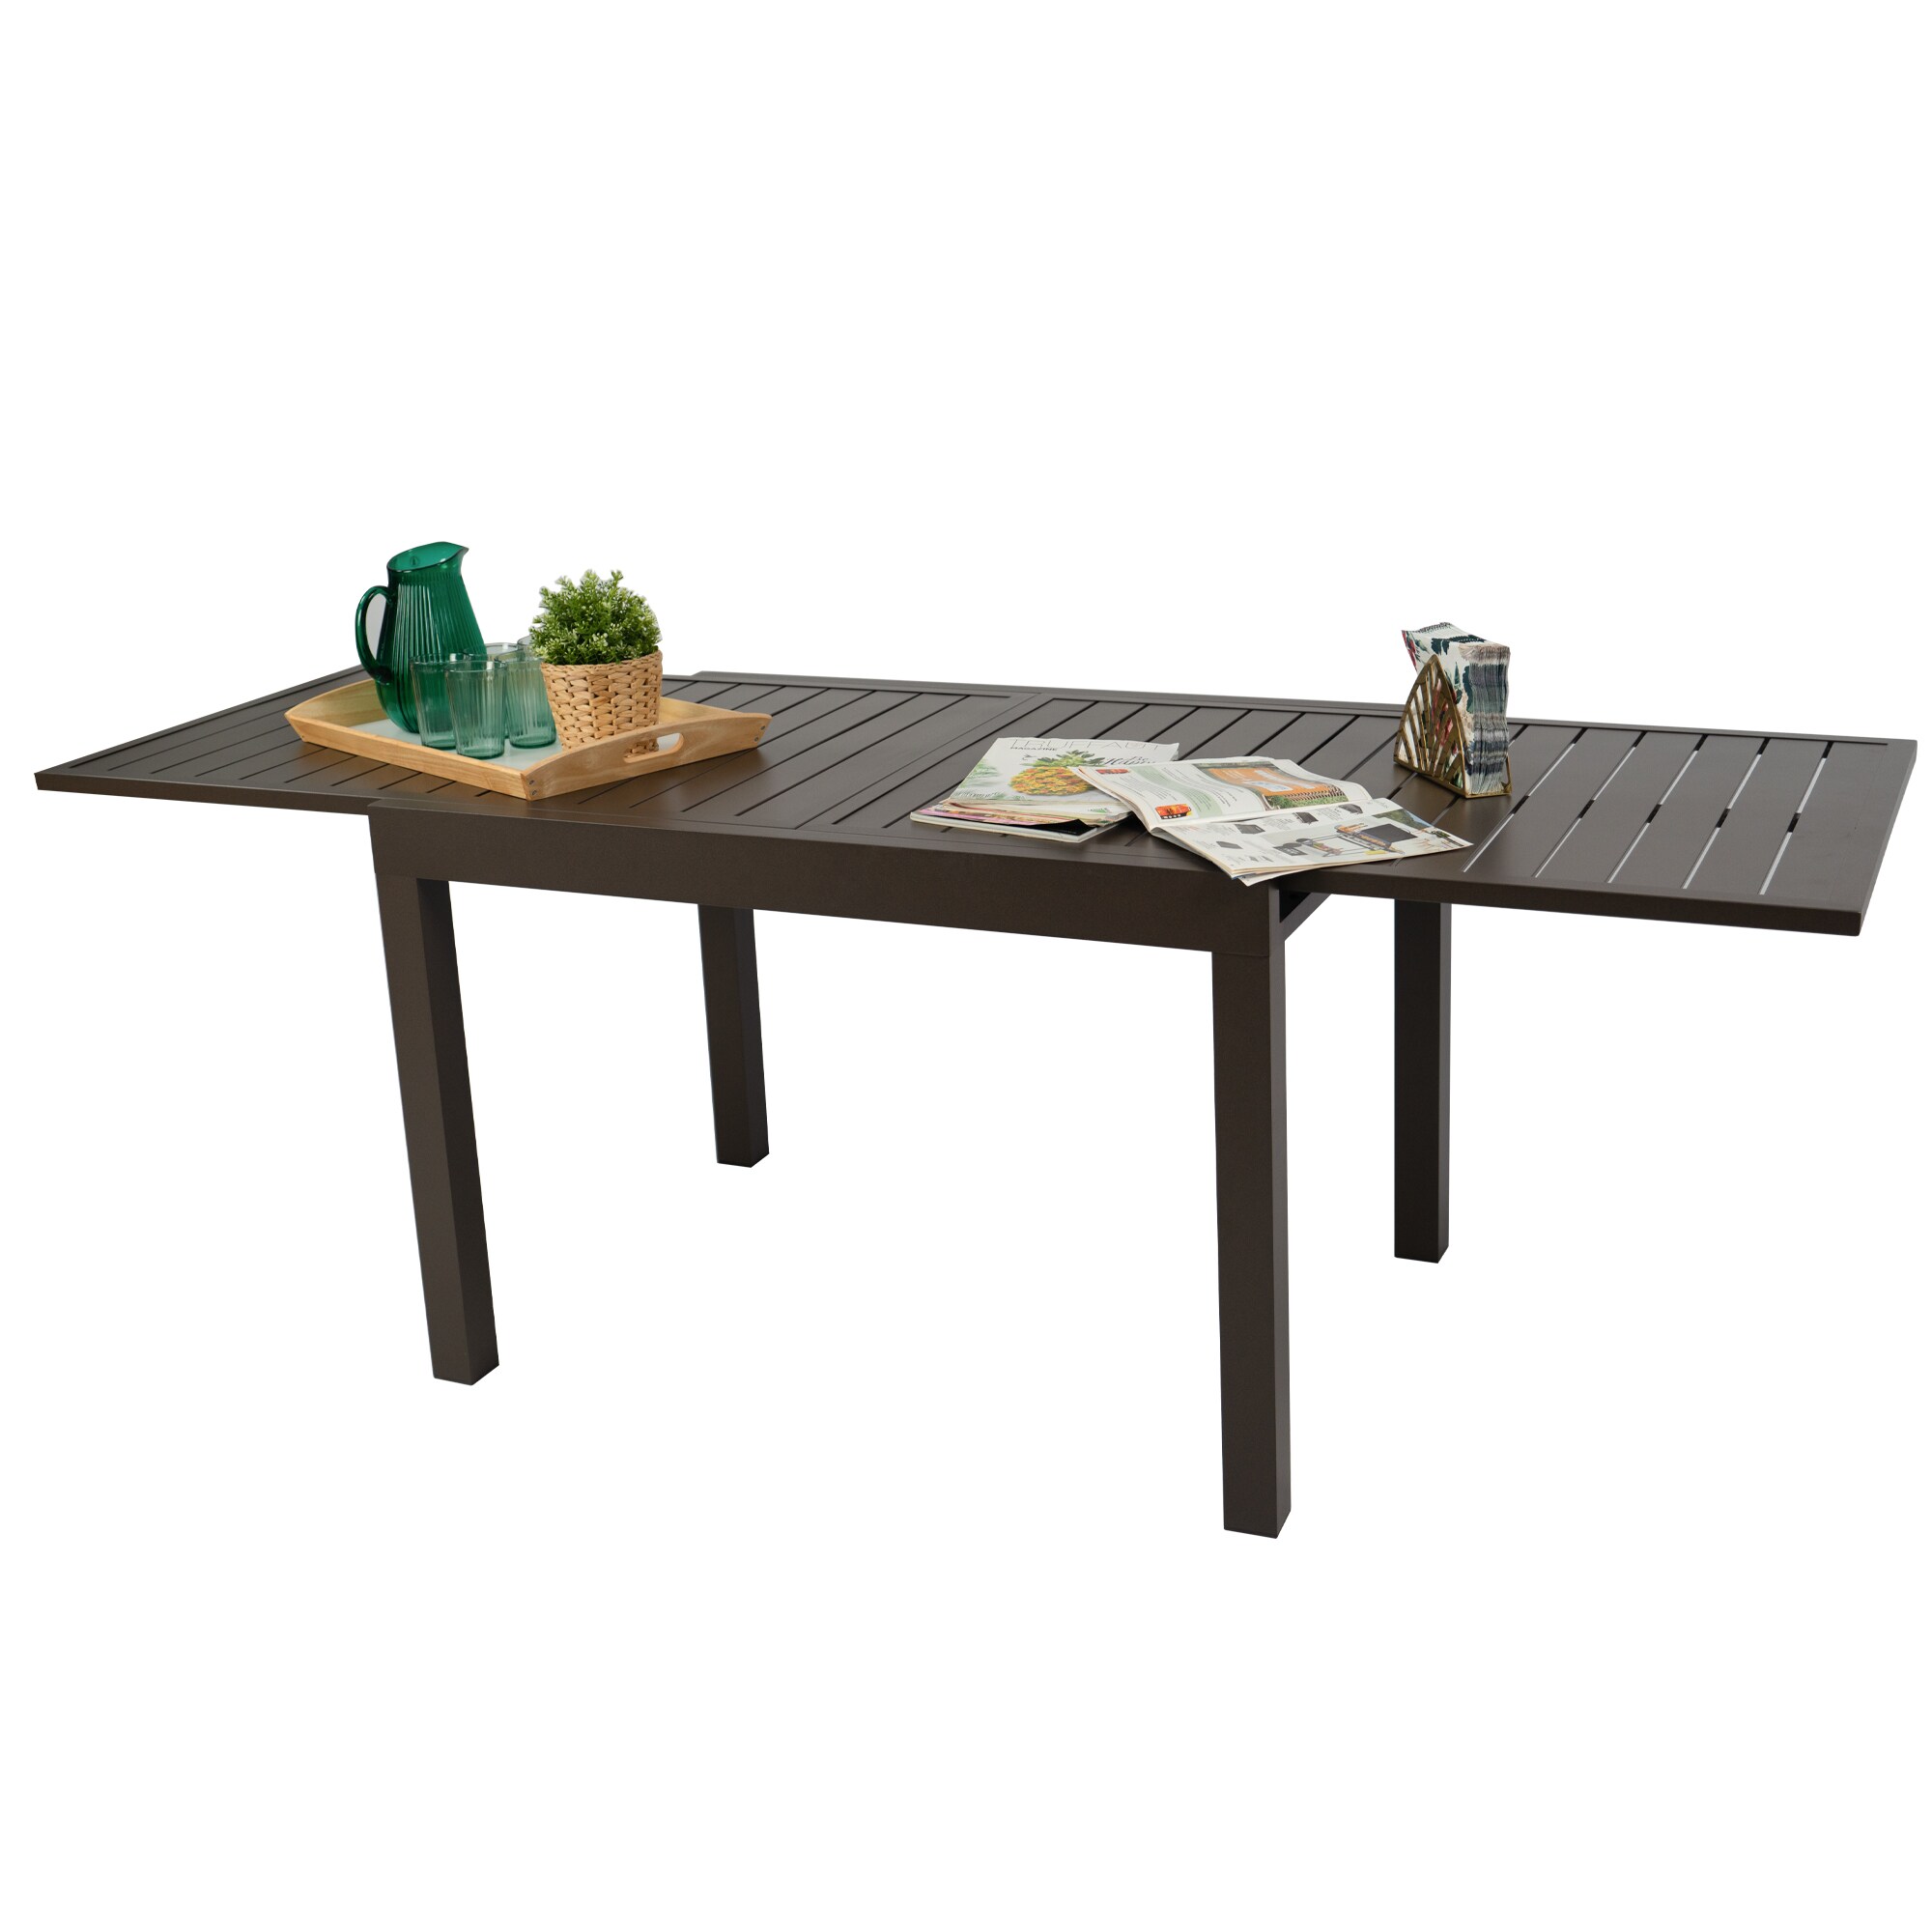 Wylie Sofa Table / Counter Height Sofa Table / Bar Table / Pub Table -   Canada